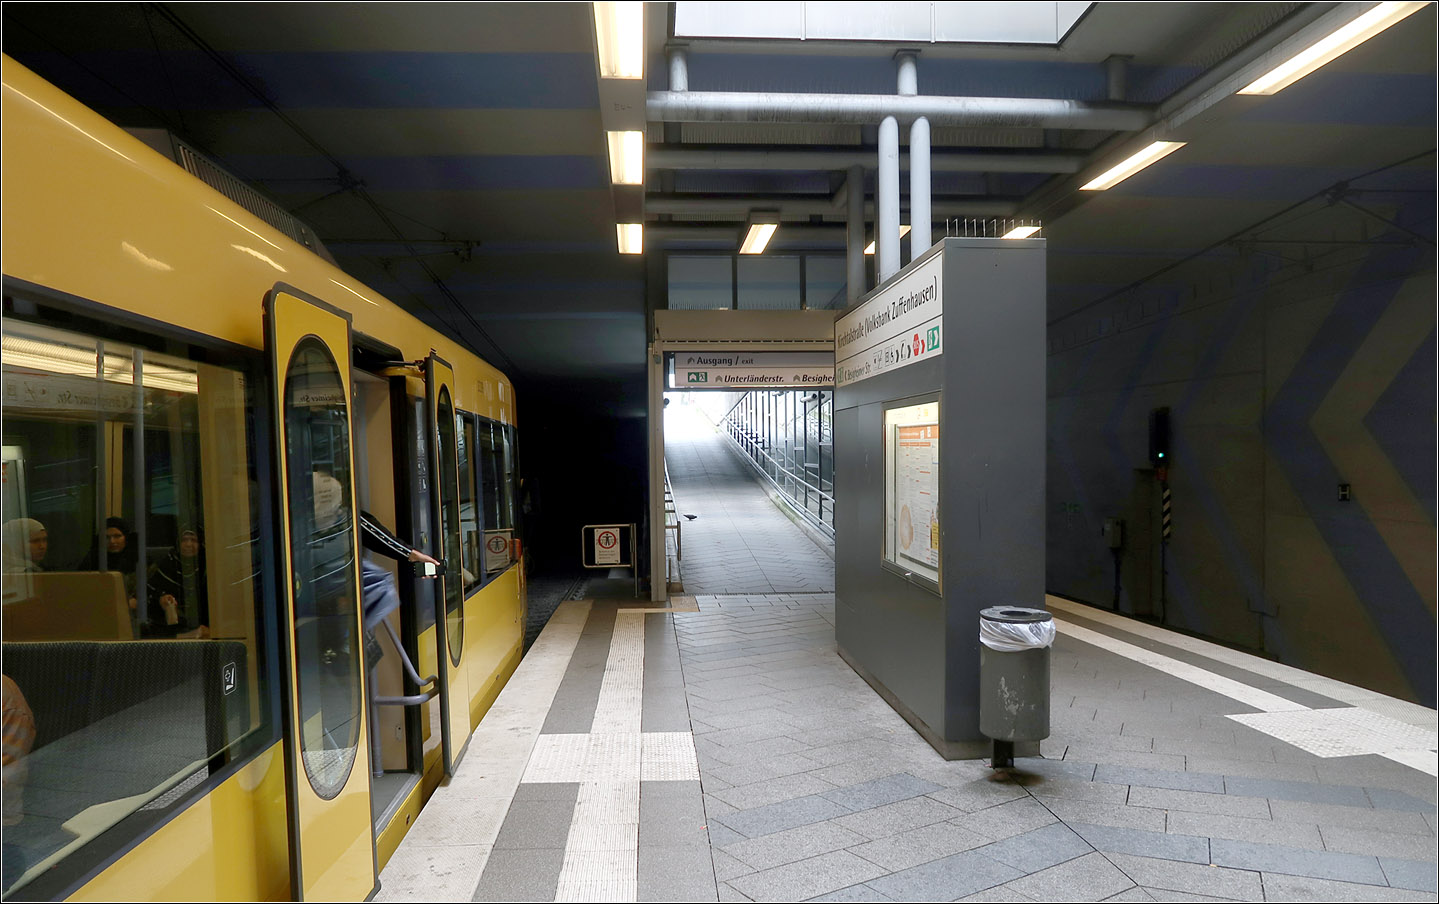 Die vielleicht kürzeste U-Station in Deutschland -

Falls hier jemals Doppeltraktionszüge eingesetzt werden sollten, könnte die Station Kirchtalstraße (Volksbank Zuffenhausen) im Bereich des Rampenzugangs auf 80 Meter verlängert werden. Ich kann mir allerdings nicht vorstellen in der straßenbündigen Ortsdurchfahrt in Stammheim dieser Strecke die Hochbahnsteige entsprechend zu verlängern. Ganz zu schweigen vom Südabschnitt der U15 hinauf zur Ruhbank.

03.08.2023 (M)



